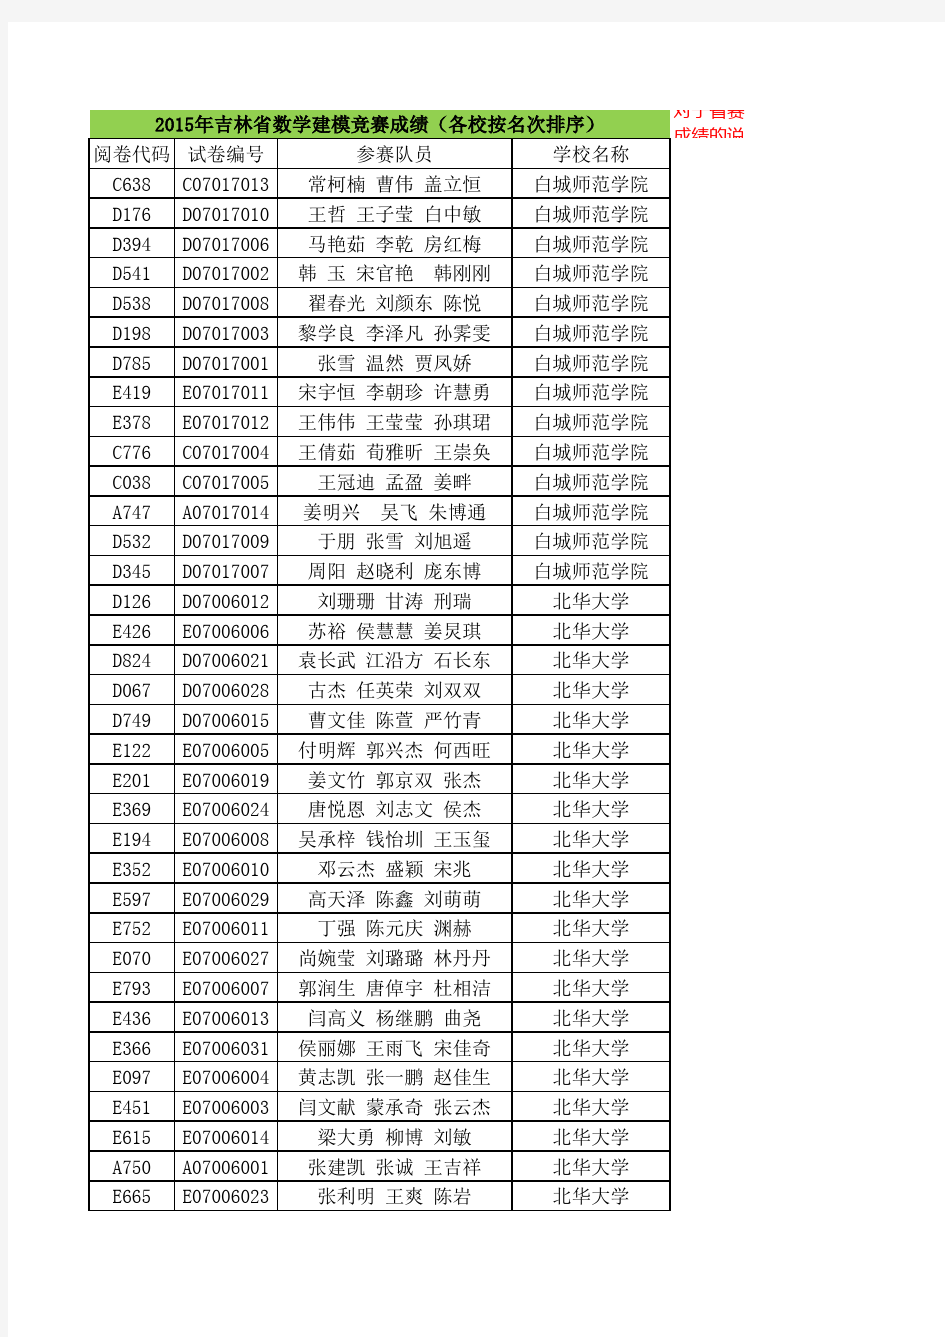 2015年吉林省数学建模竞赛成绩(各校按名次排序)